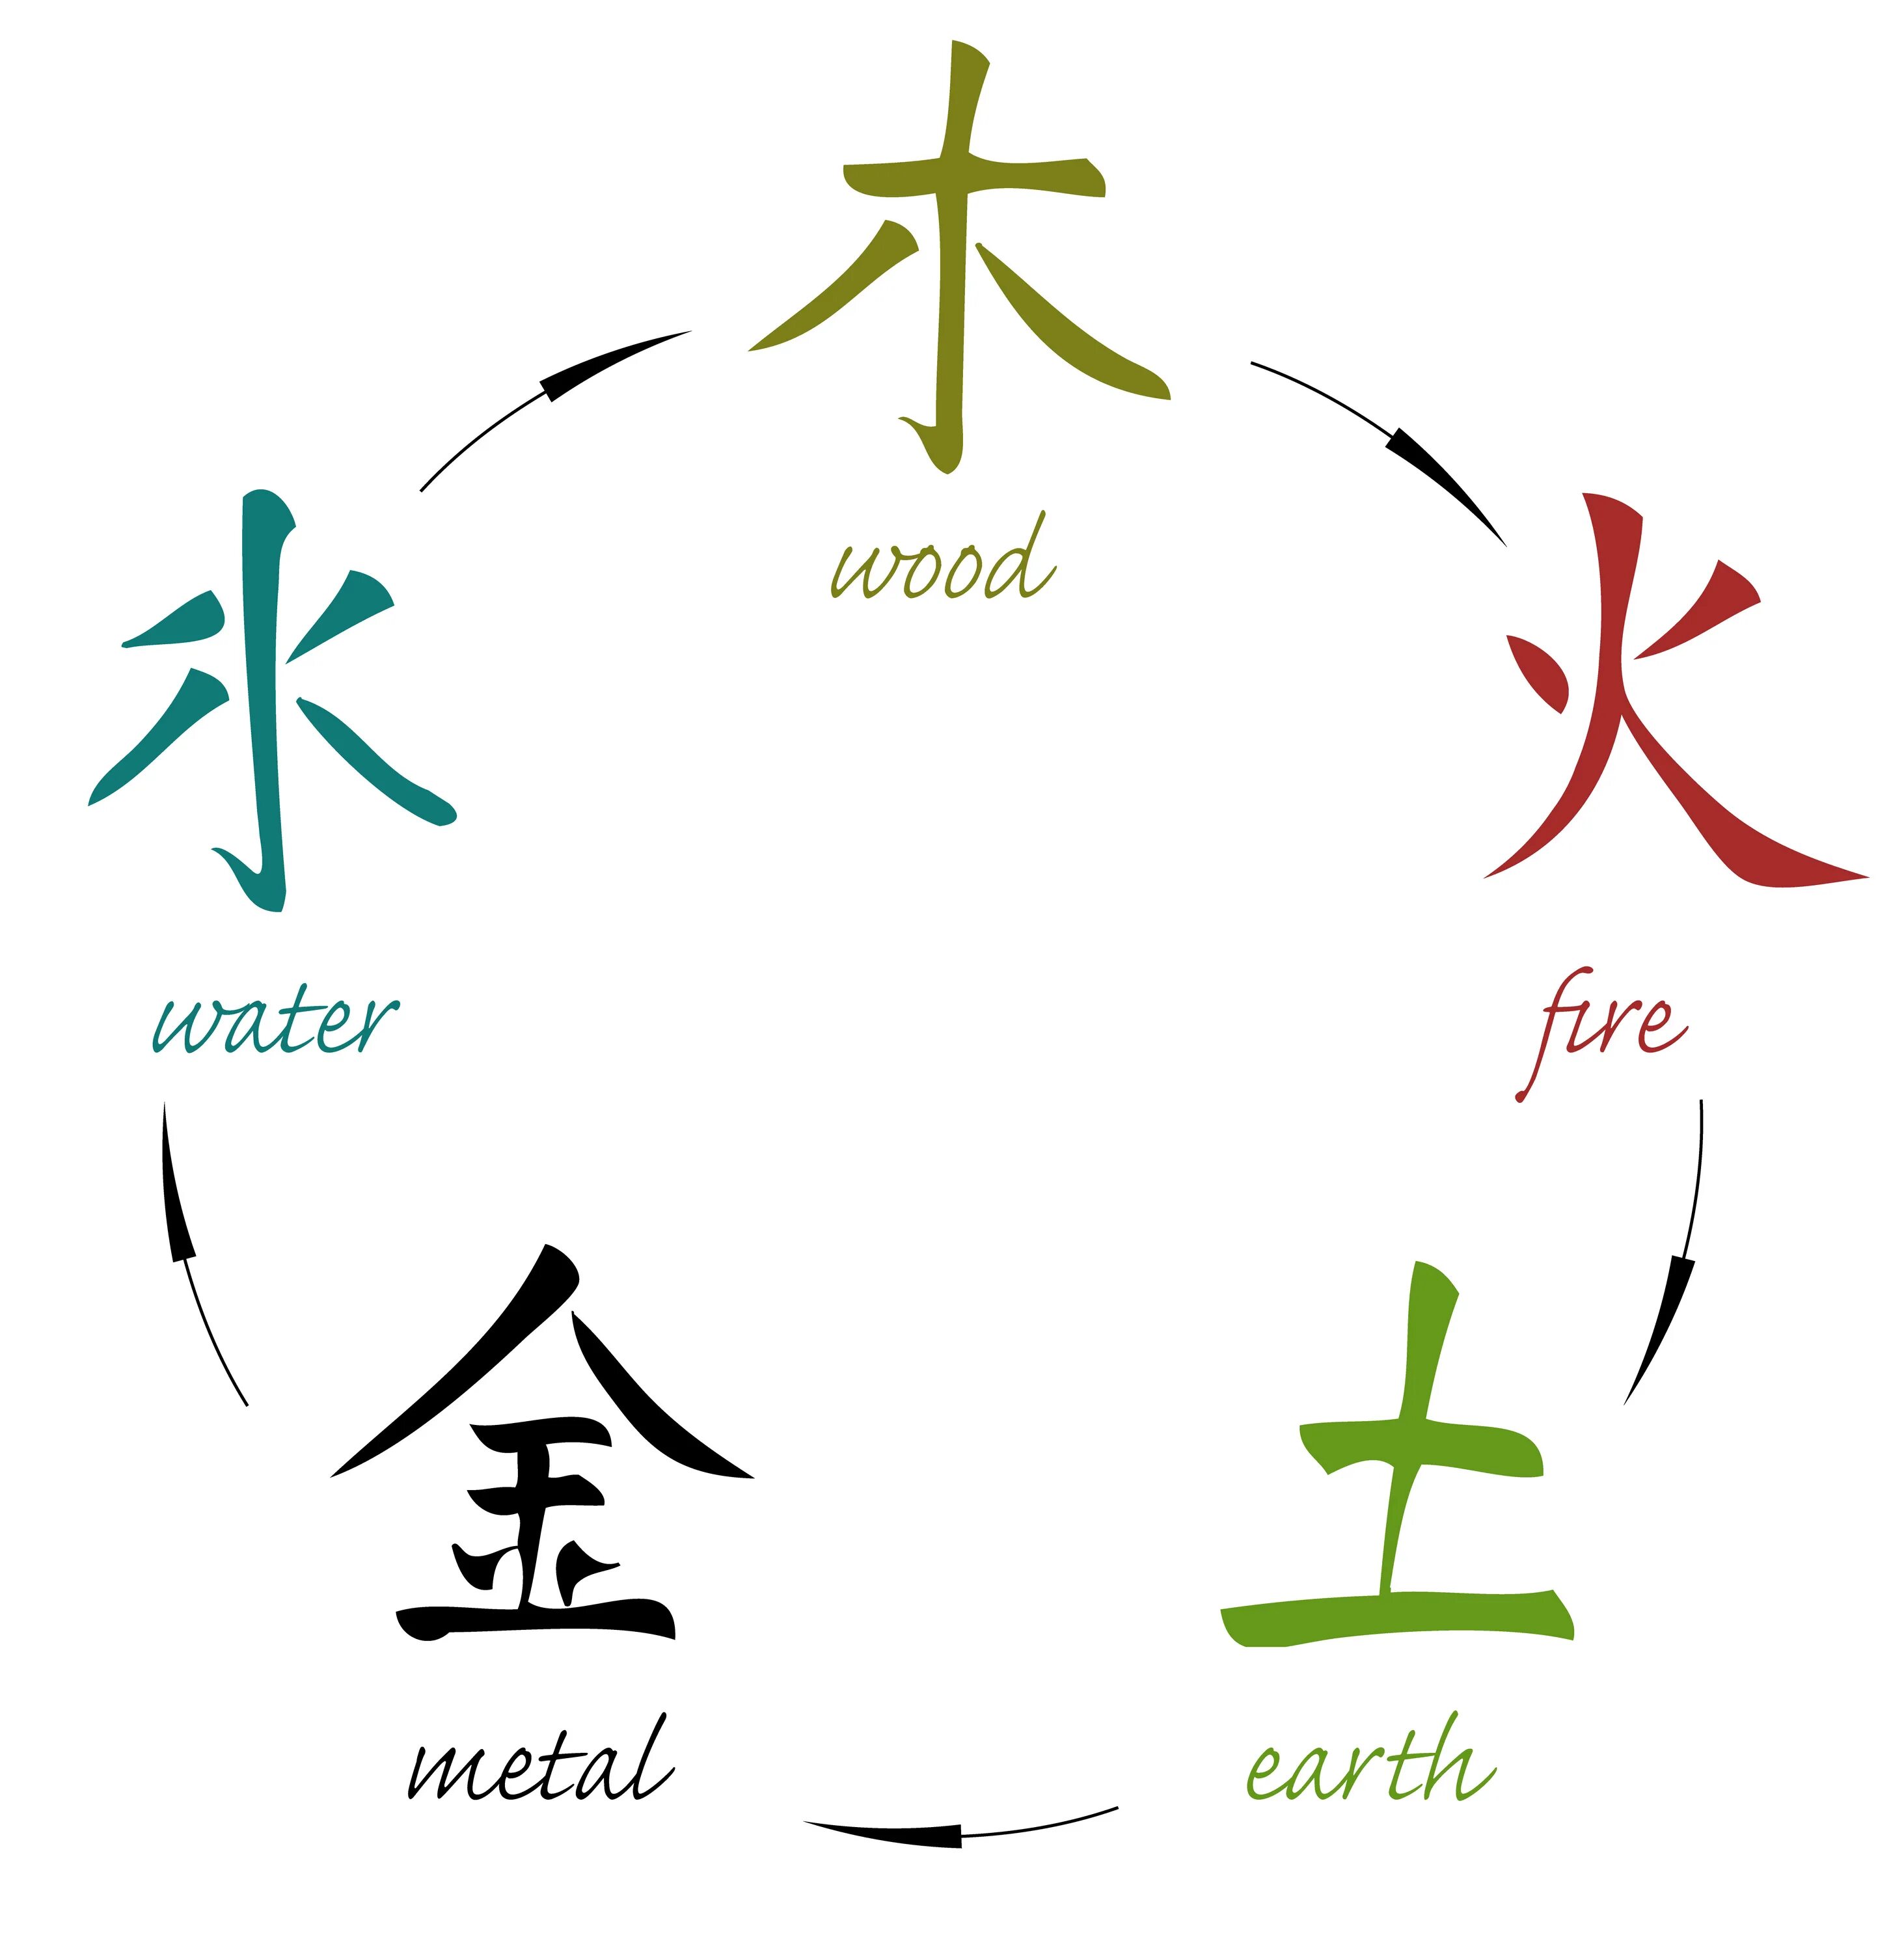 5 на китайском. У-син 5 элементов иероглиф. Китайские символы стихий. Китайский символ земли. Иероглифы стихий.